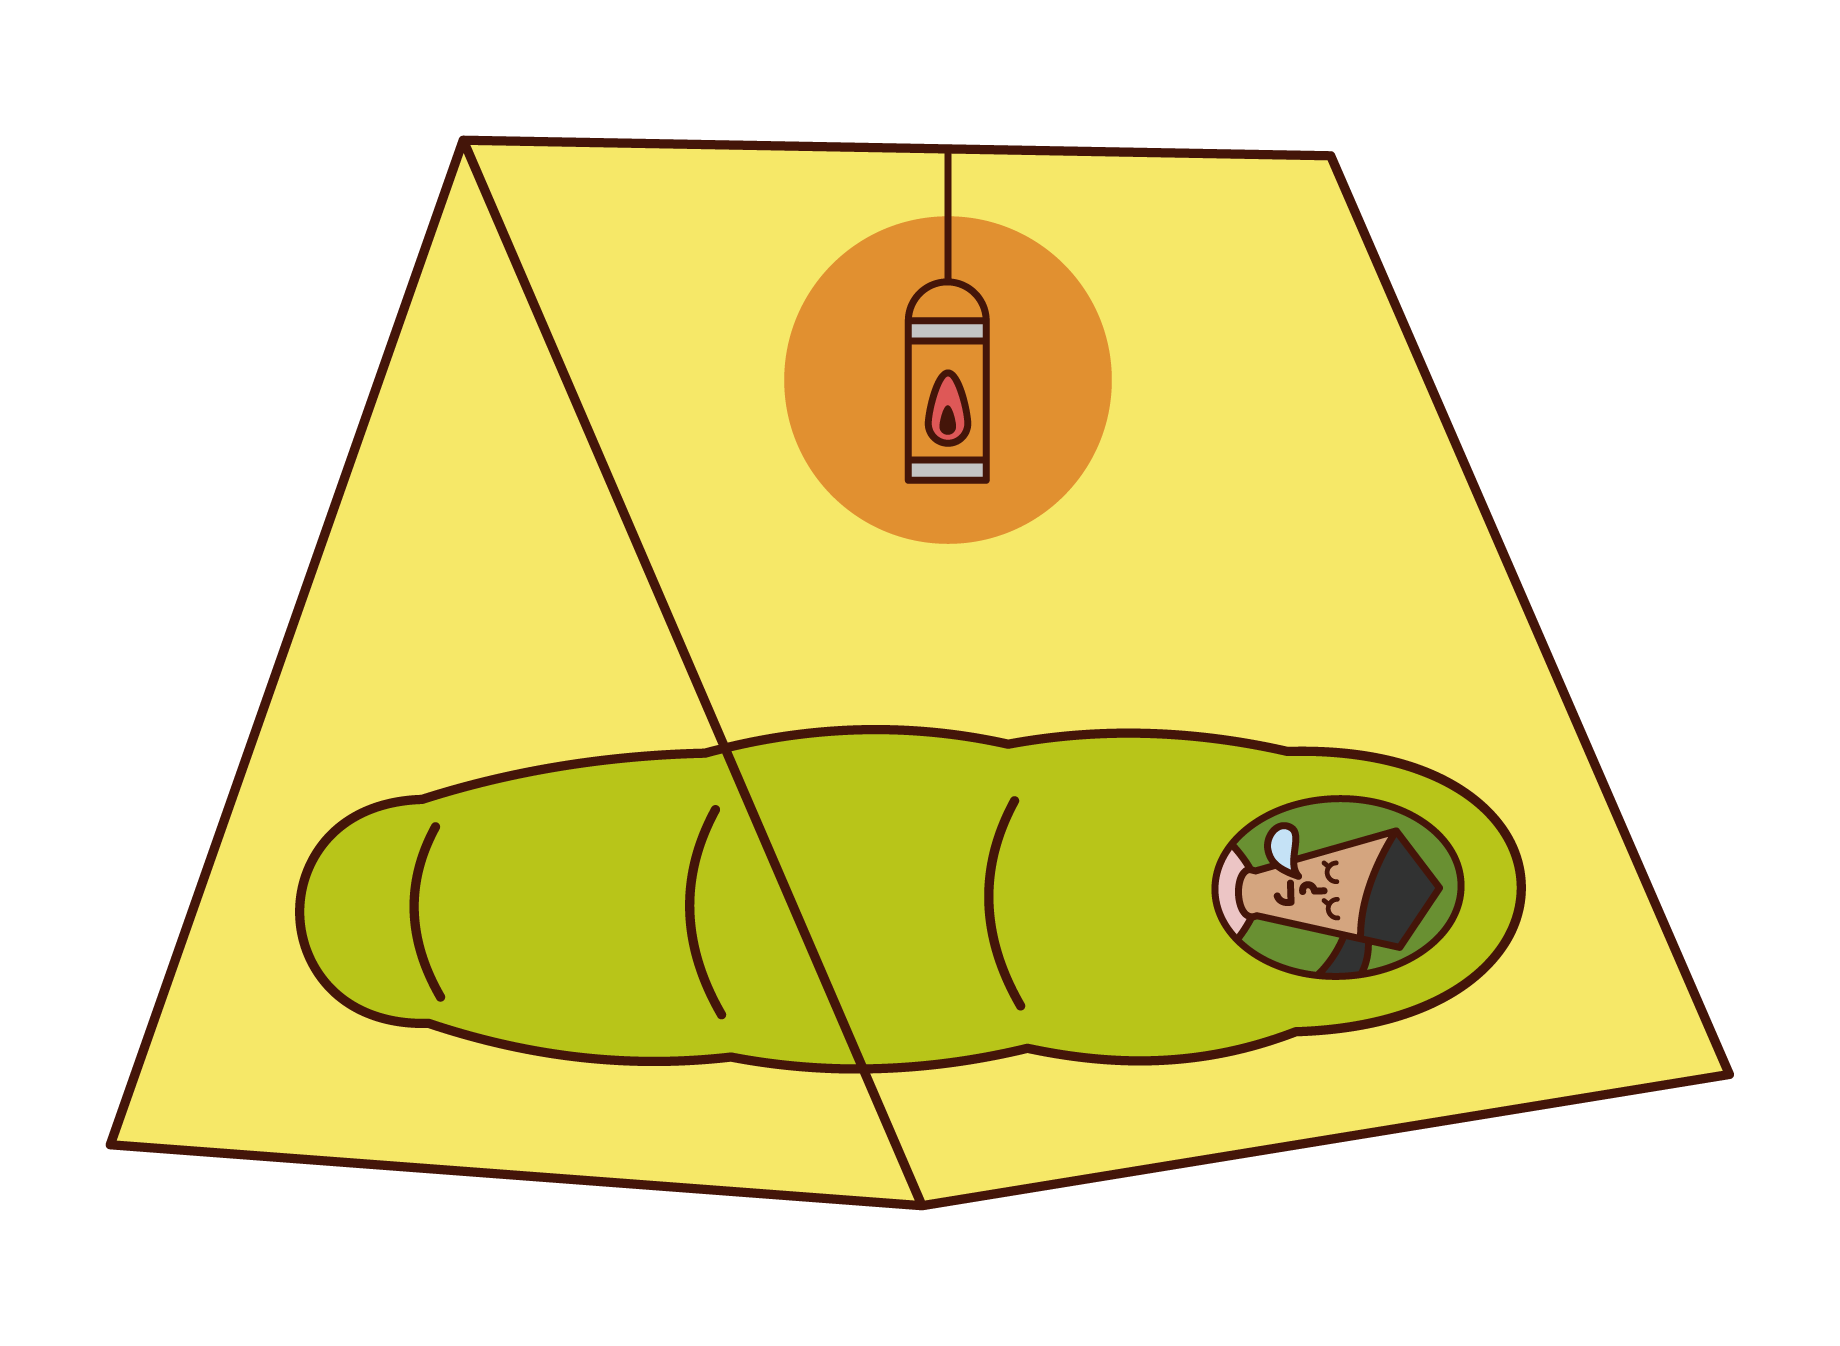 テントの中で寝る人 女性 のイラスト フリーイラスト素材 Kukukeke ククケケ